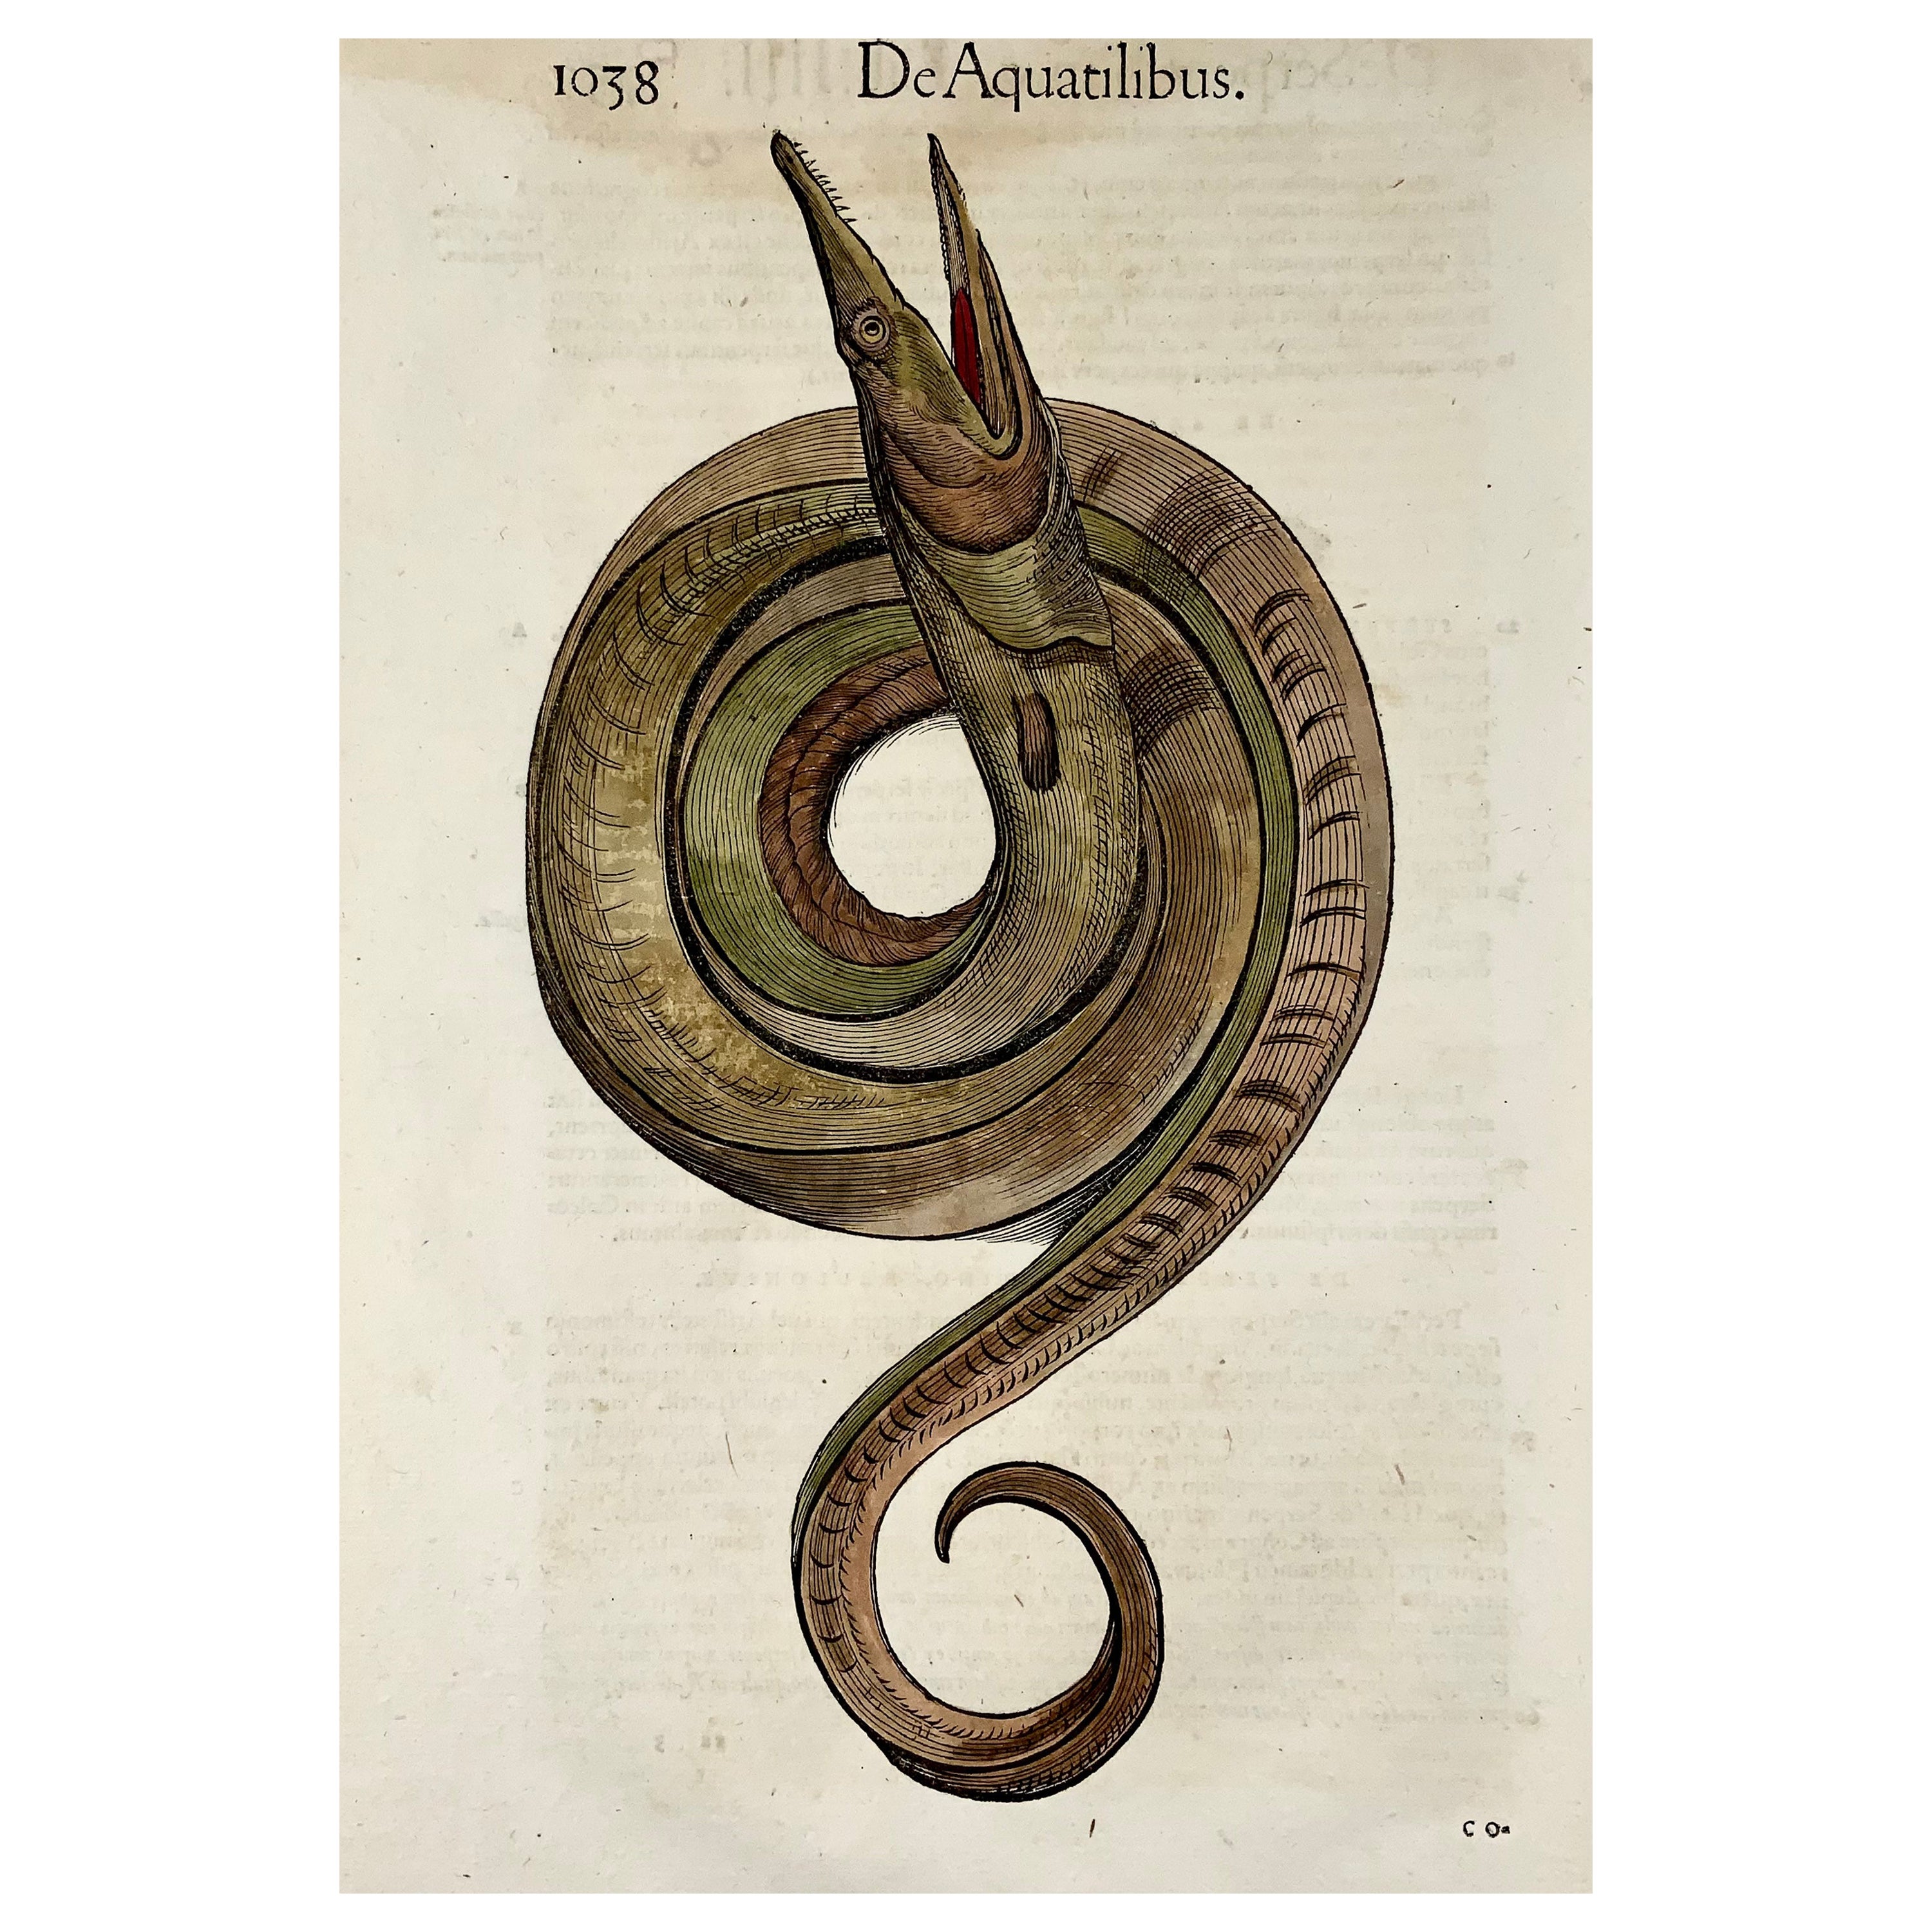 1558 Seeschlangenschlange, Conrad Gesner, Folio-Holzschnitt, handkoloriert, Erststaat